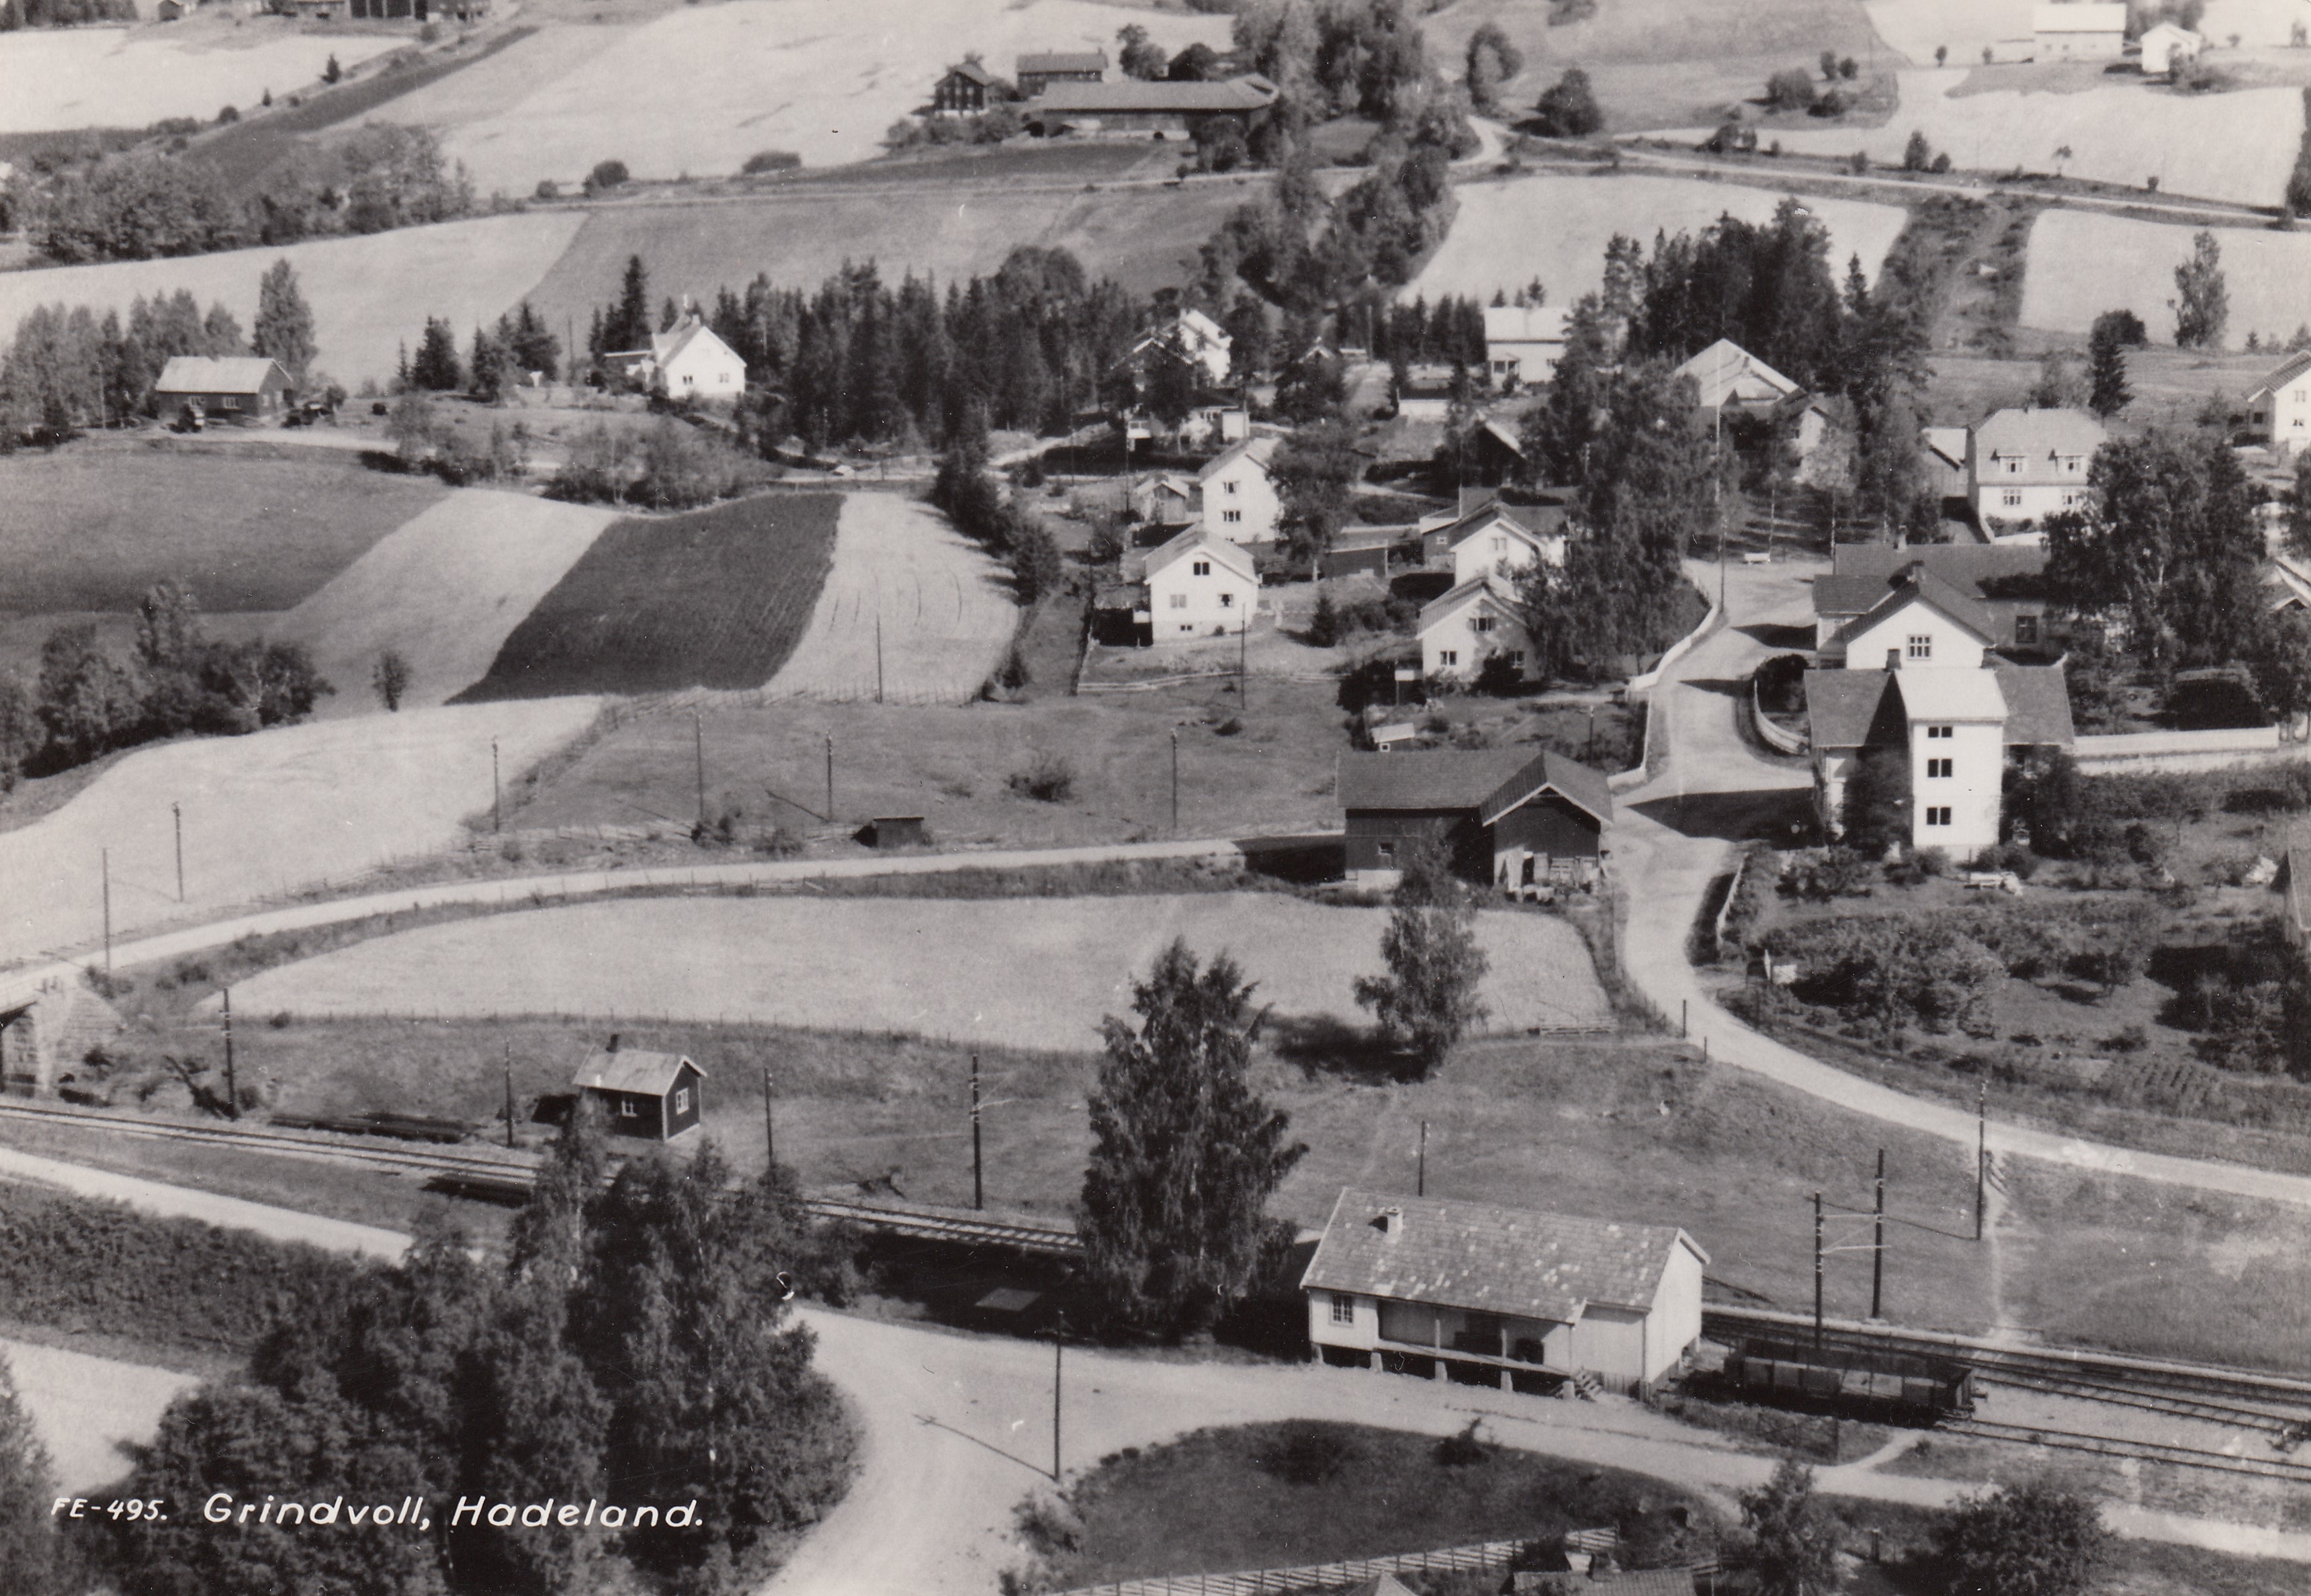 Inntil jernbanesporet ligger Grindvoll innkjøpslag (mjølbua). Flyfotoet fra ca. 1960 er utlånt av Asle I. Jetlund.